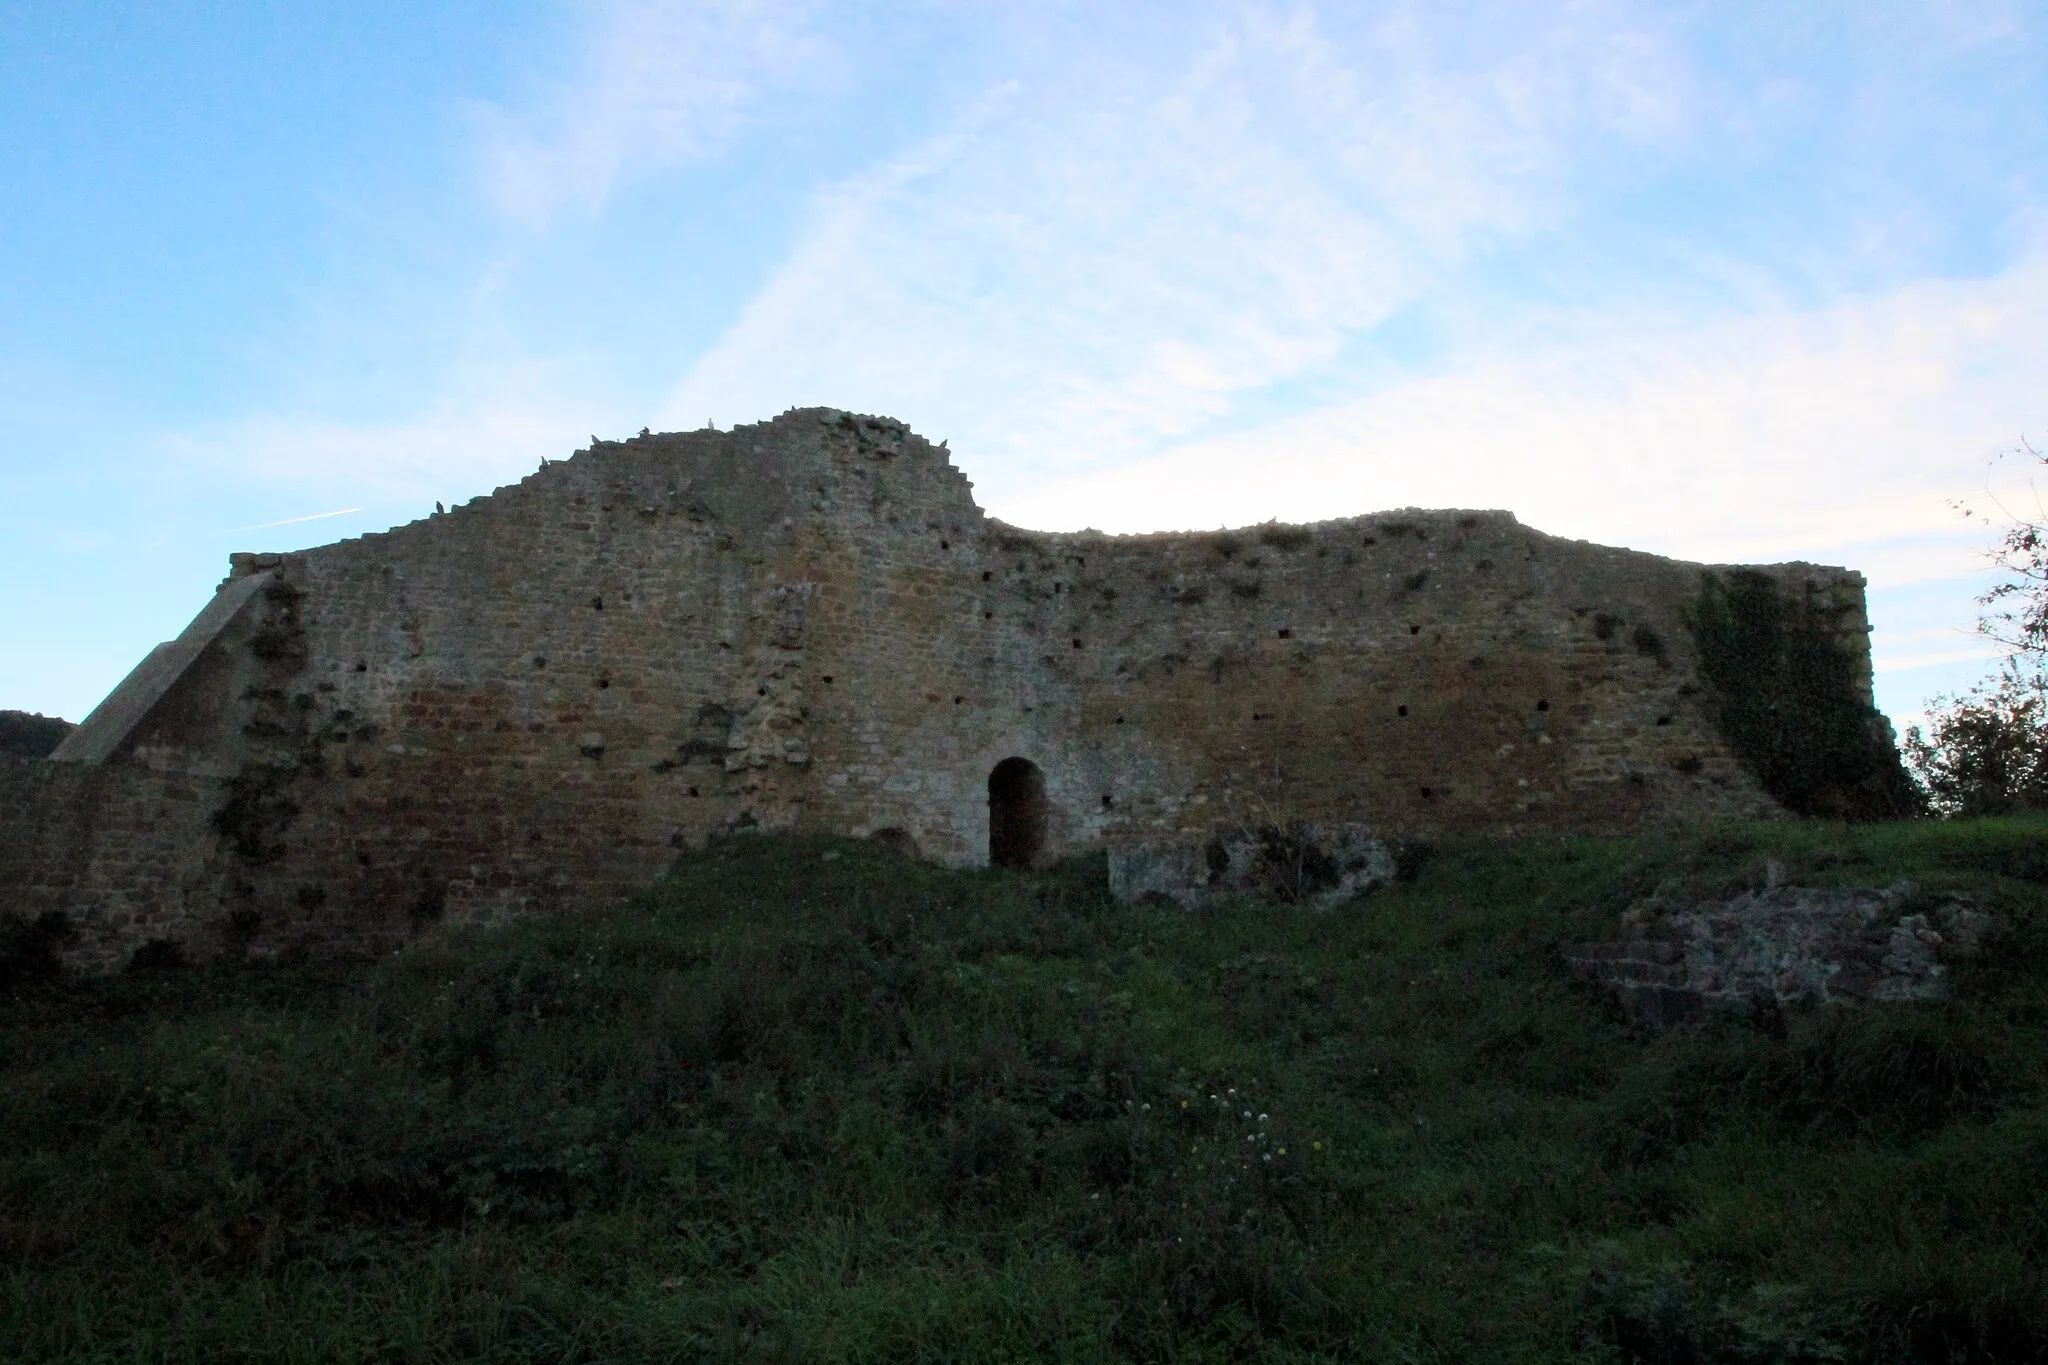 Photo showing: Castle Rocca Aldobrandesca in Buriano, hamlet of Castiglione della Pescaia, Maremma, Province of Grosseto, Tuscany, Italy